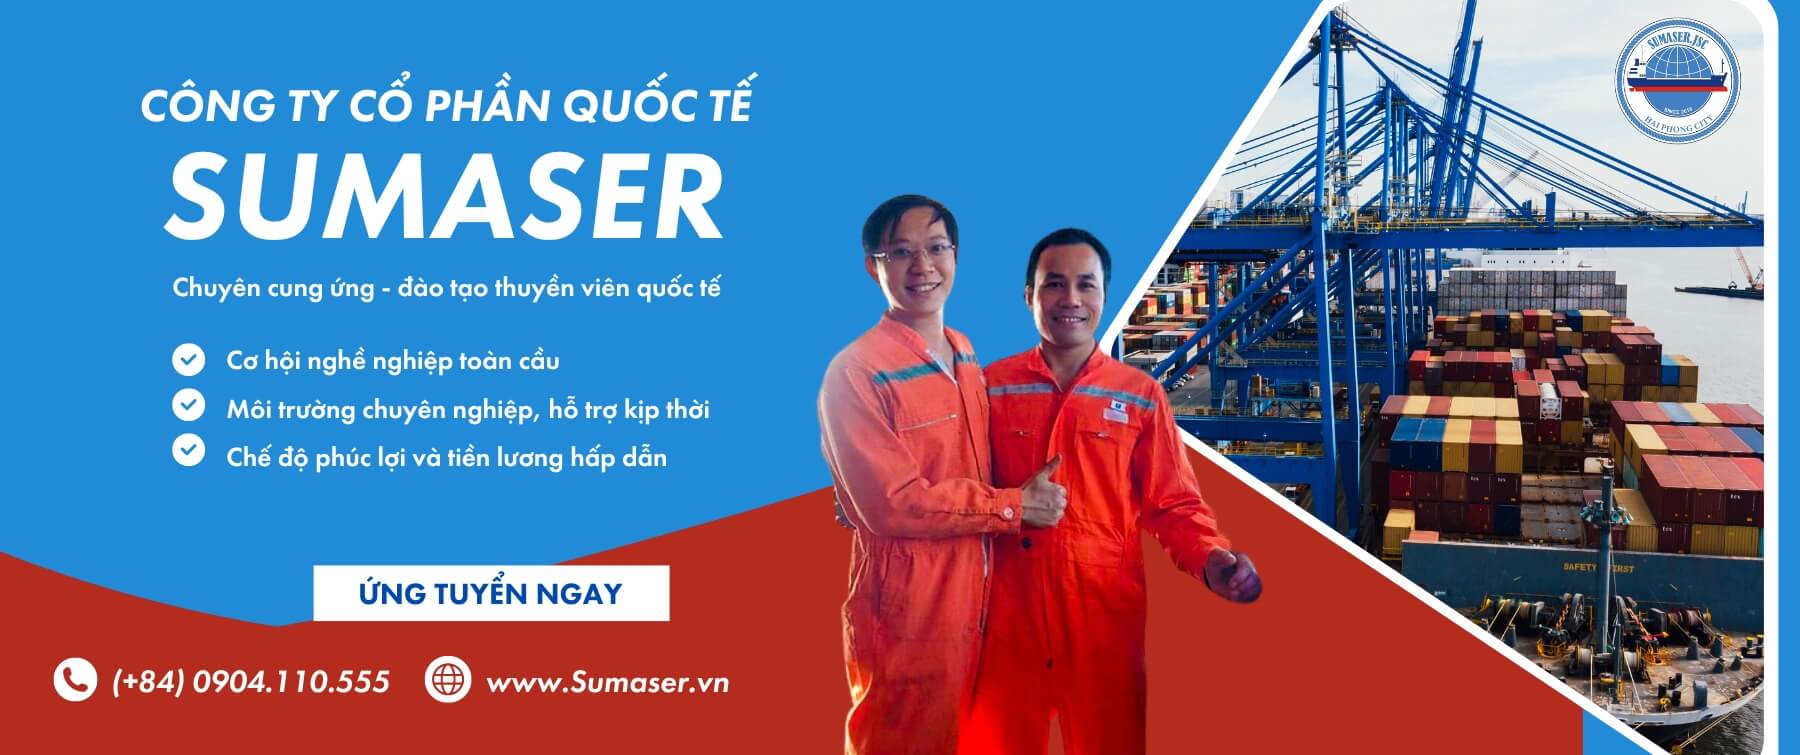 Sumaser.vn - Cung ứng, đào tạo thuyền viên quốc tế, cơ hội việc làm toàn cầu